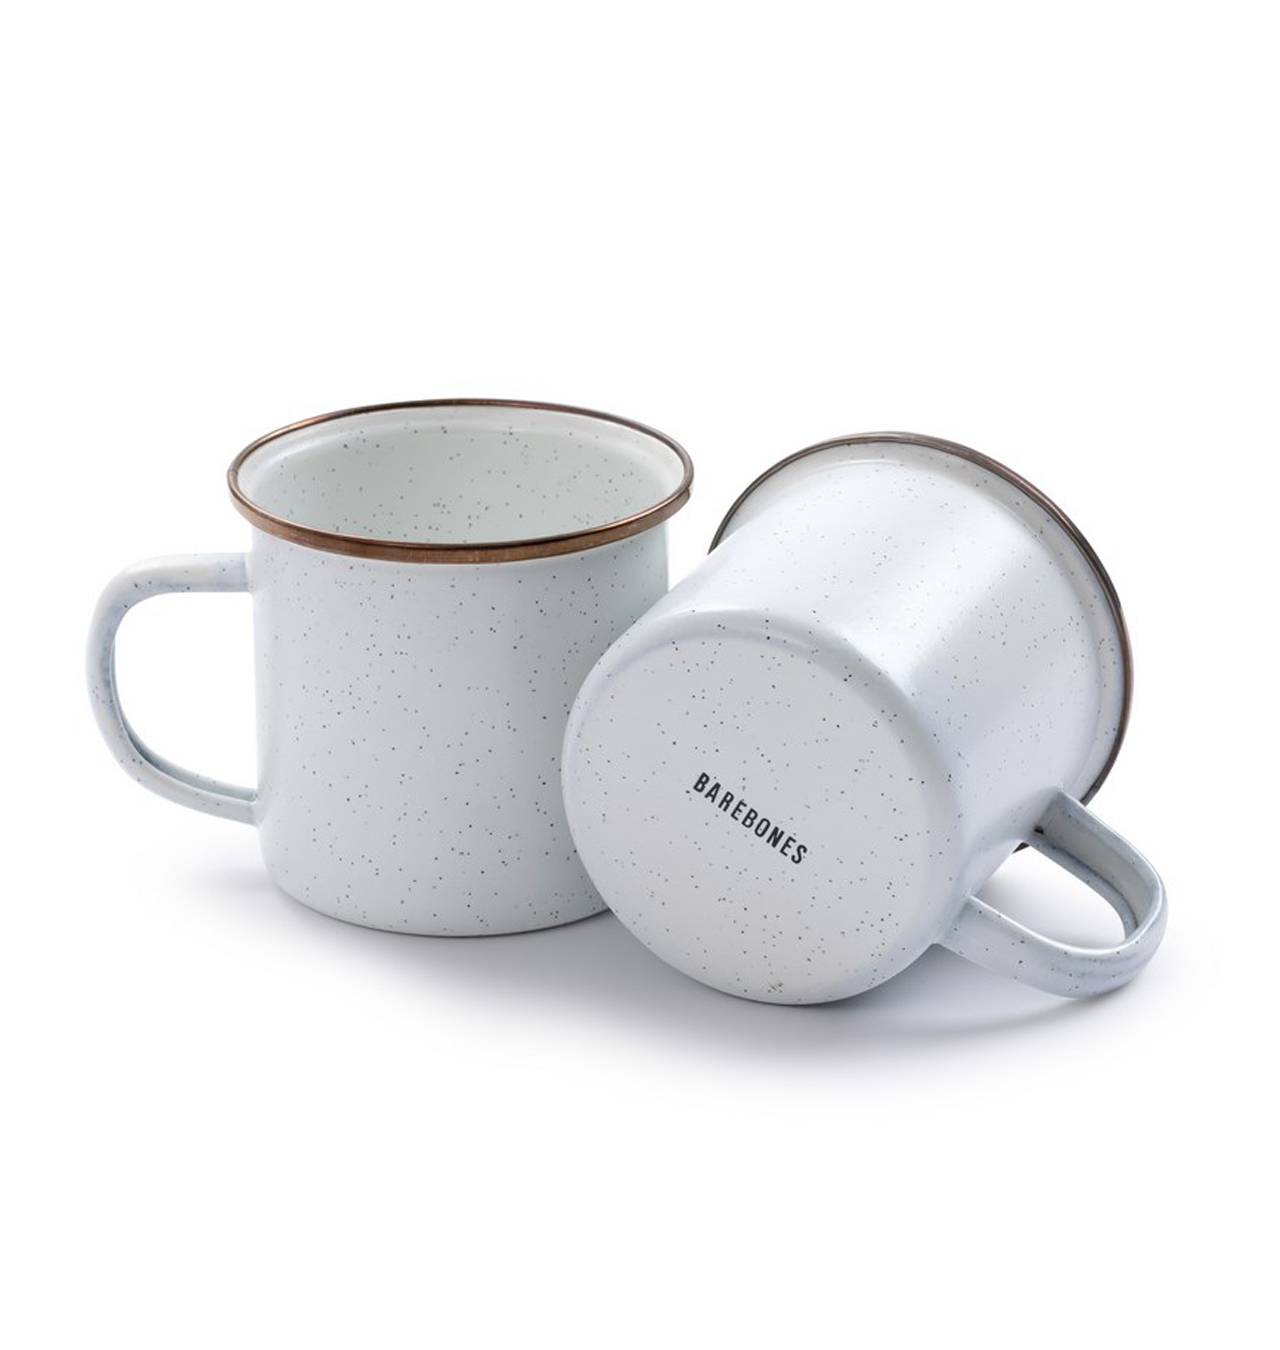 Barebones - Enamel Coffee Mugs (Set of 2) - Eggshell